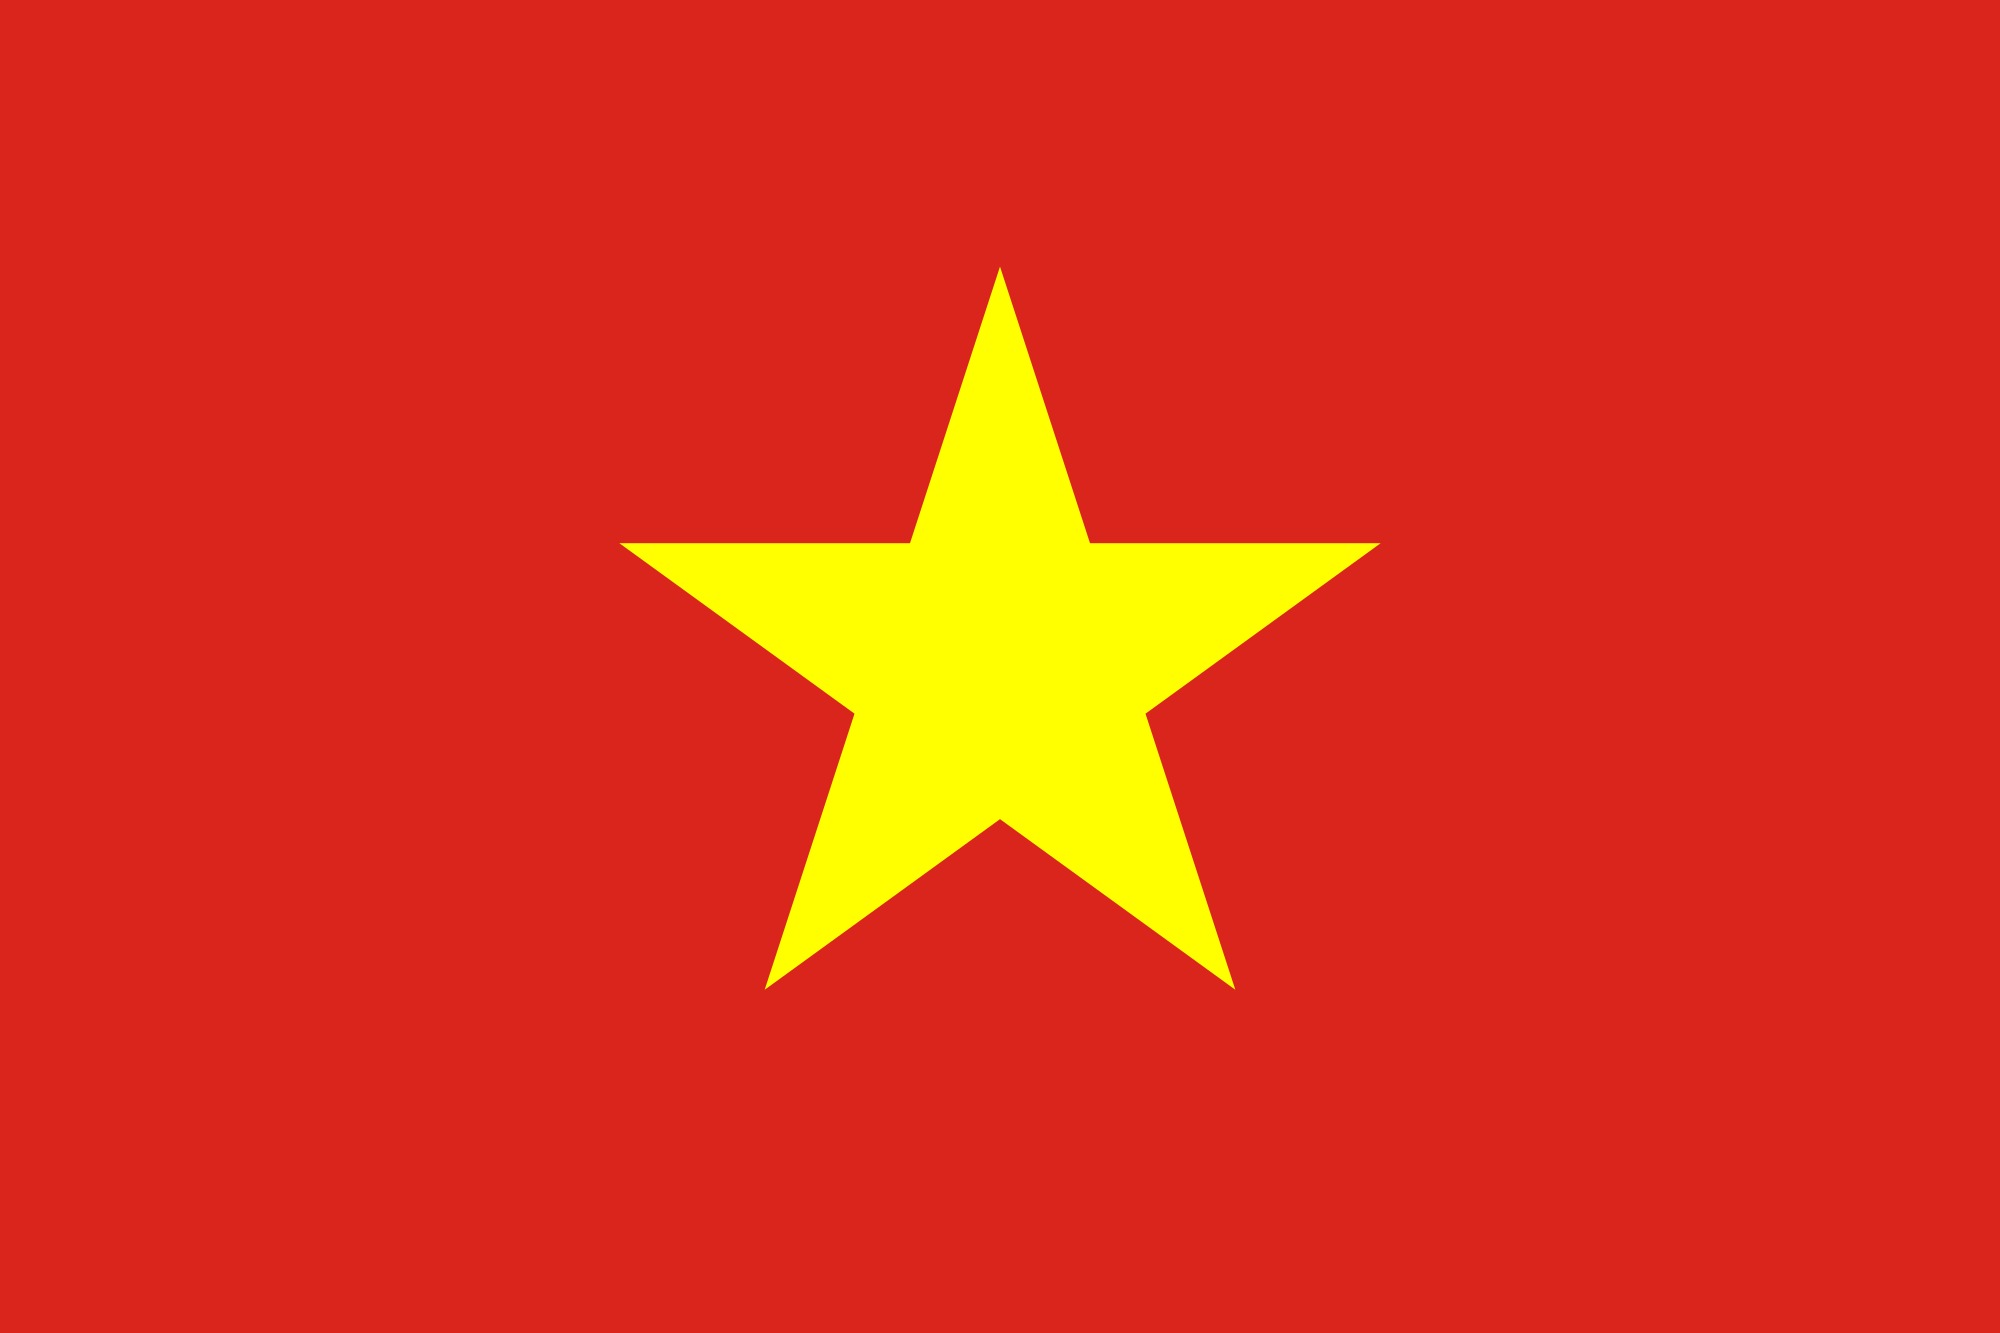 Ý nghĩa tượng trưng trên lá quốc kỳ Việt Nam: Lá quốc kỳ Việt Nam là một biểu tượng đặc trưng của đất nước Việt Nam với những ý nghĩa tượng trưng rất sâu sắc và đặc biệt. Hãy cùng khám phá và tìm hiểu về từng chi tiết trên lá quốc kỳ Việt Nam để hiểu rõ hơn về tâm hồn và bản sắc dân tộc Việt Nam thông qua những hình ảnh chân thực và đầy cảm hứng.